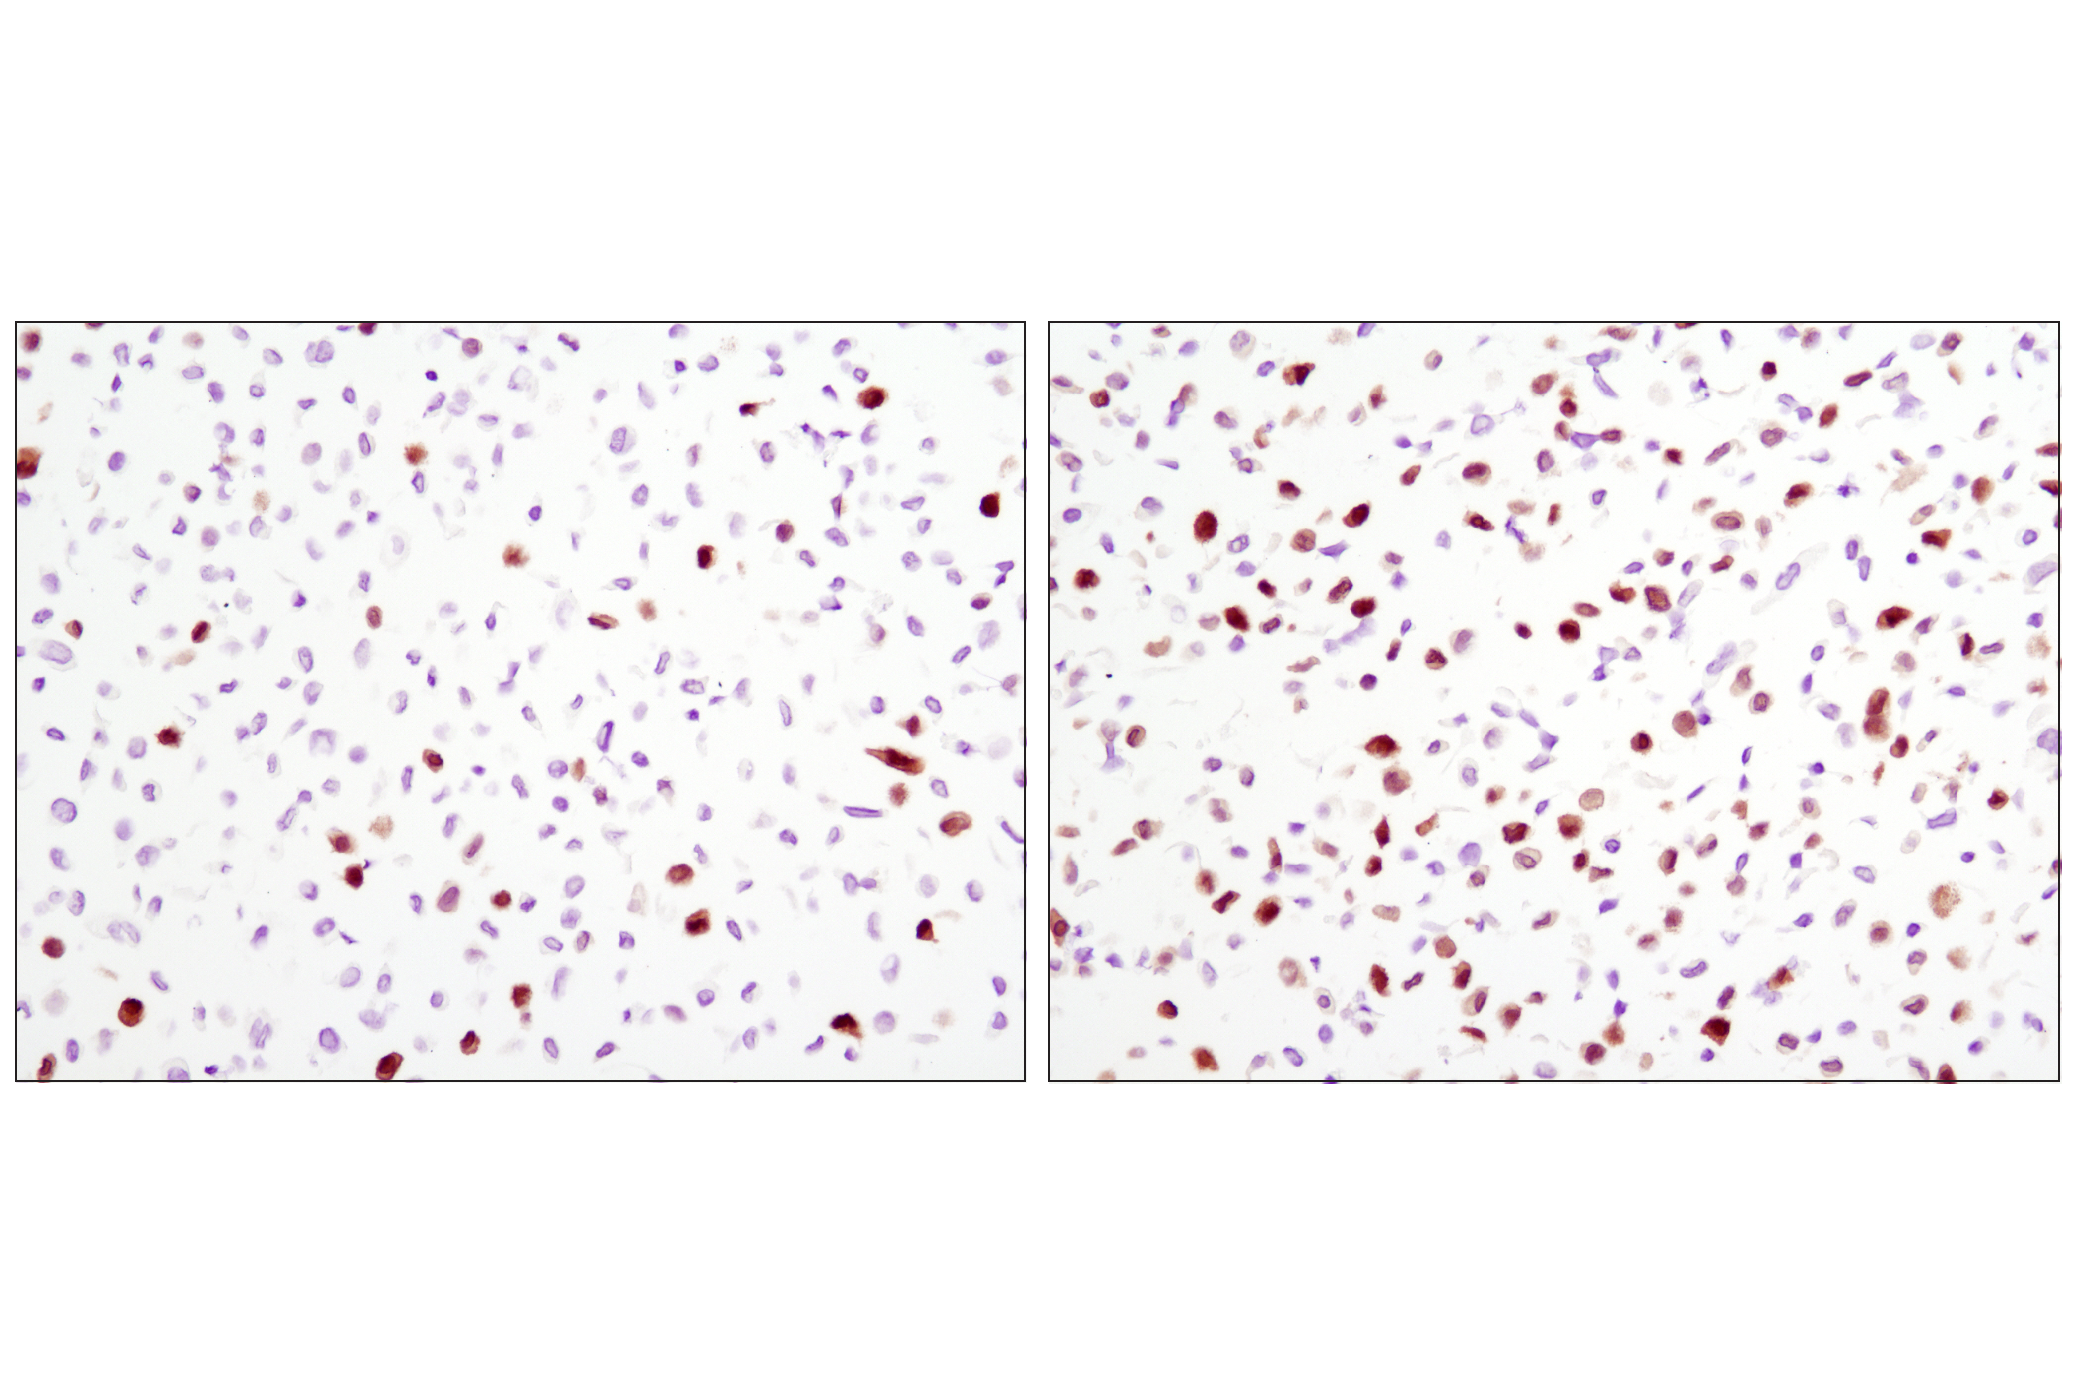  Image 14: PhosphoPlus® p44/42 MAPK (Erk1/2) (Thr202/Tyr204) Antibody Kit